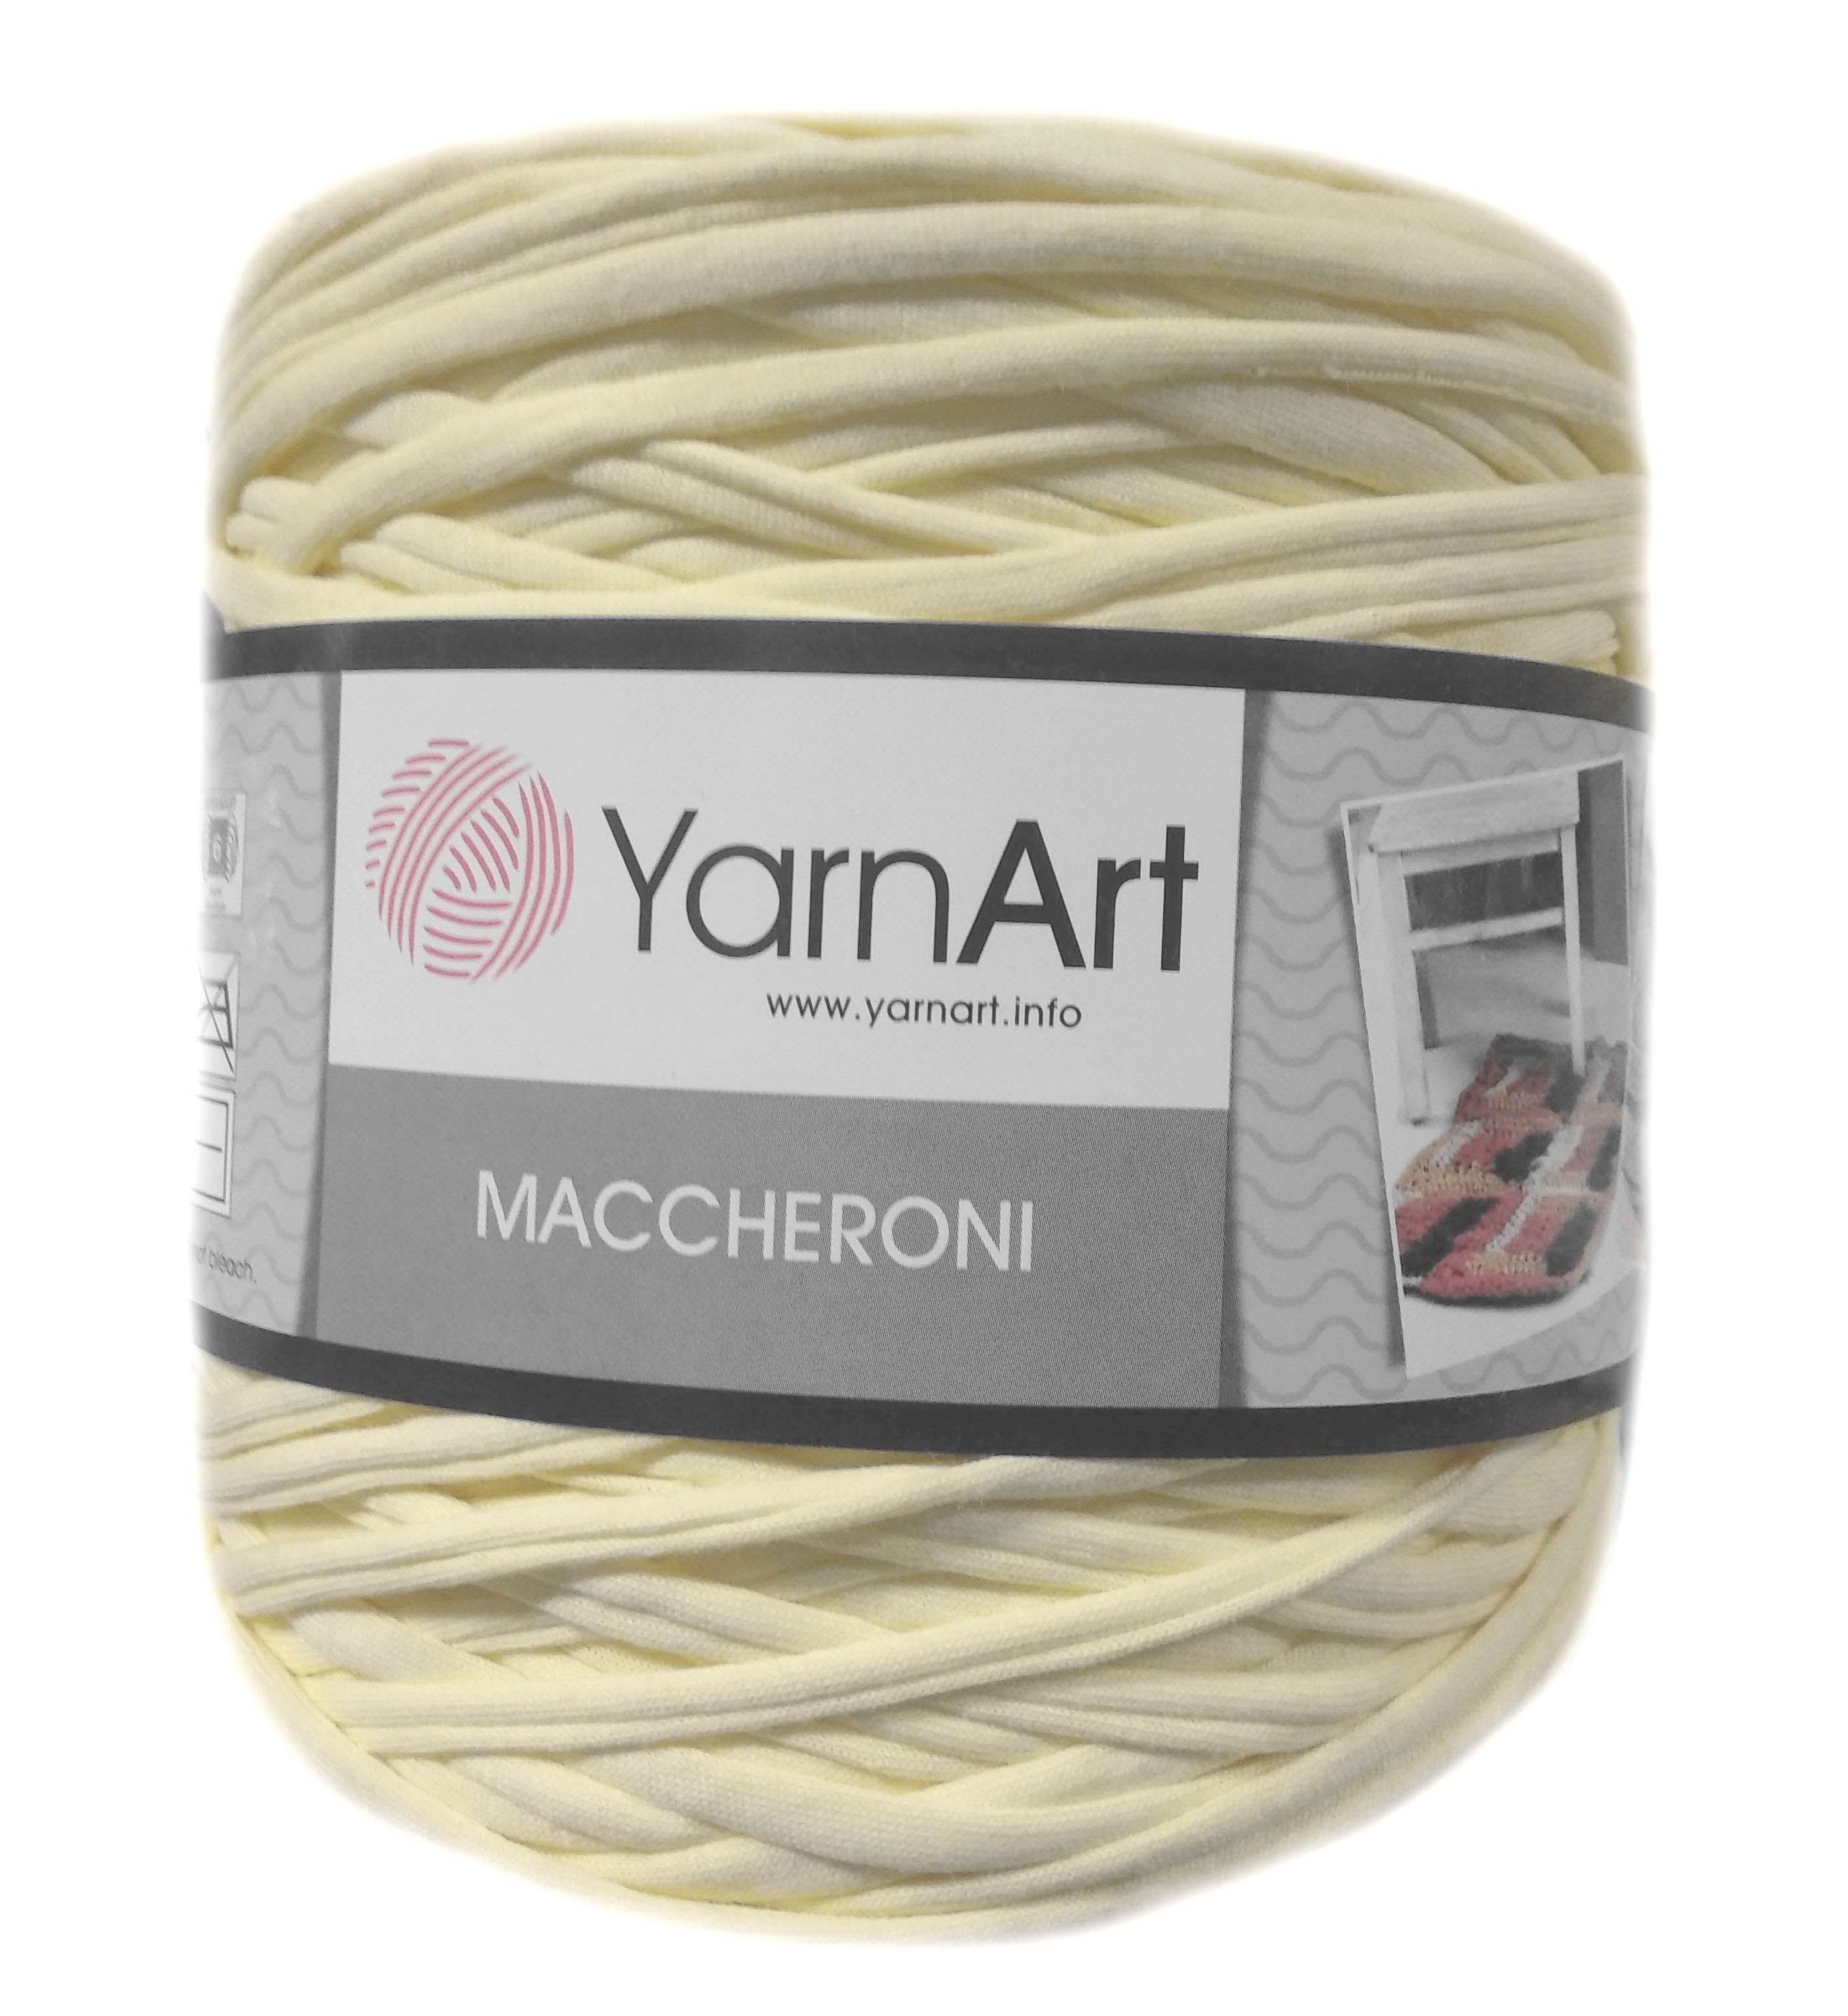 YarnArt MACCHERONI, halványsárga/vajszínű póló fonal.Tű 12-15 mm.